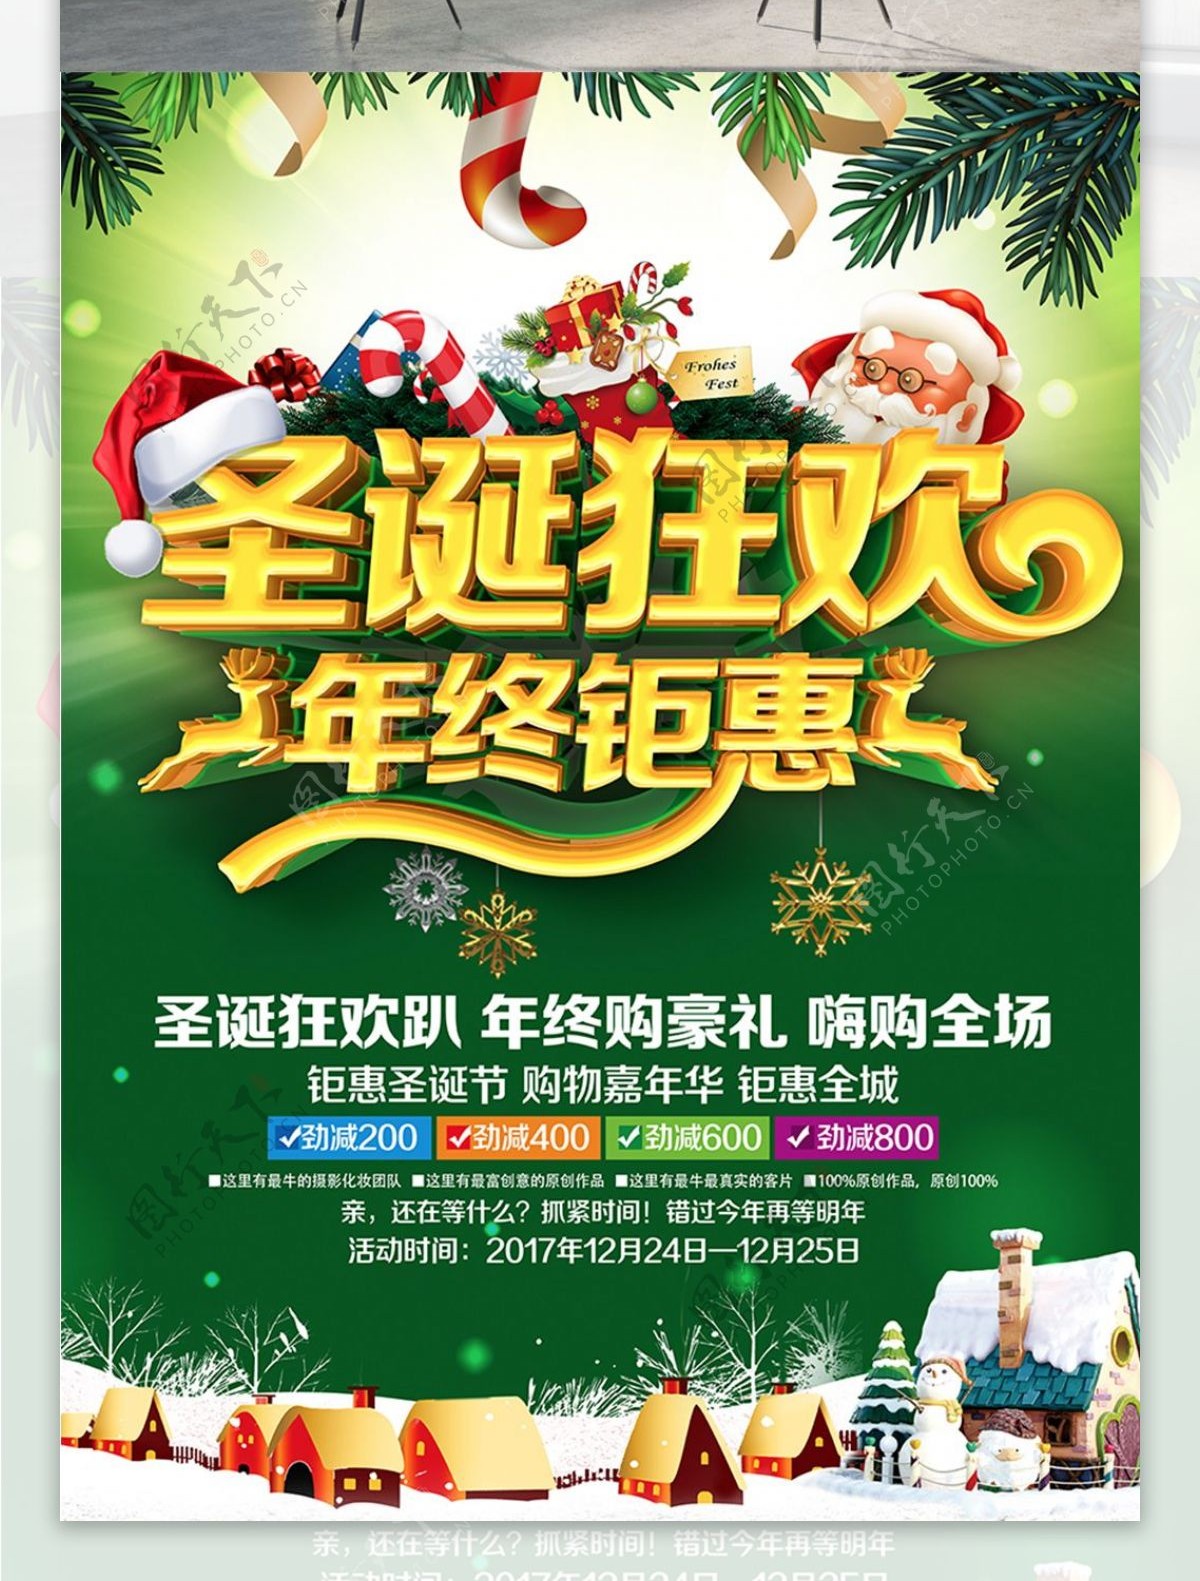 C4D精品渲染圣诞狂欢圣诞节促销主题海报